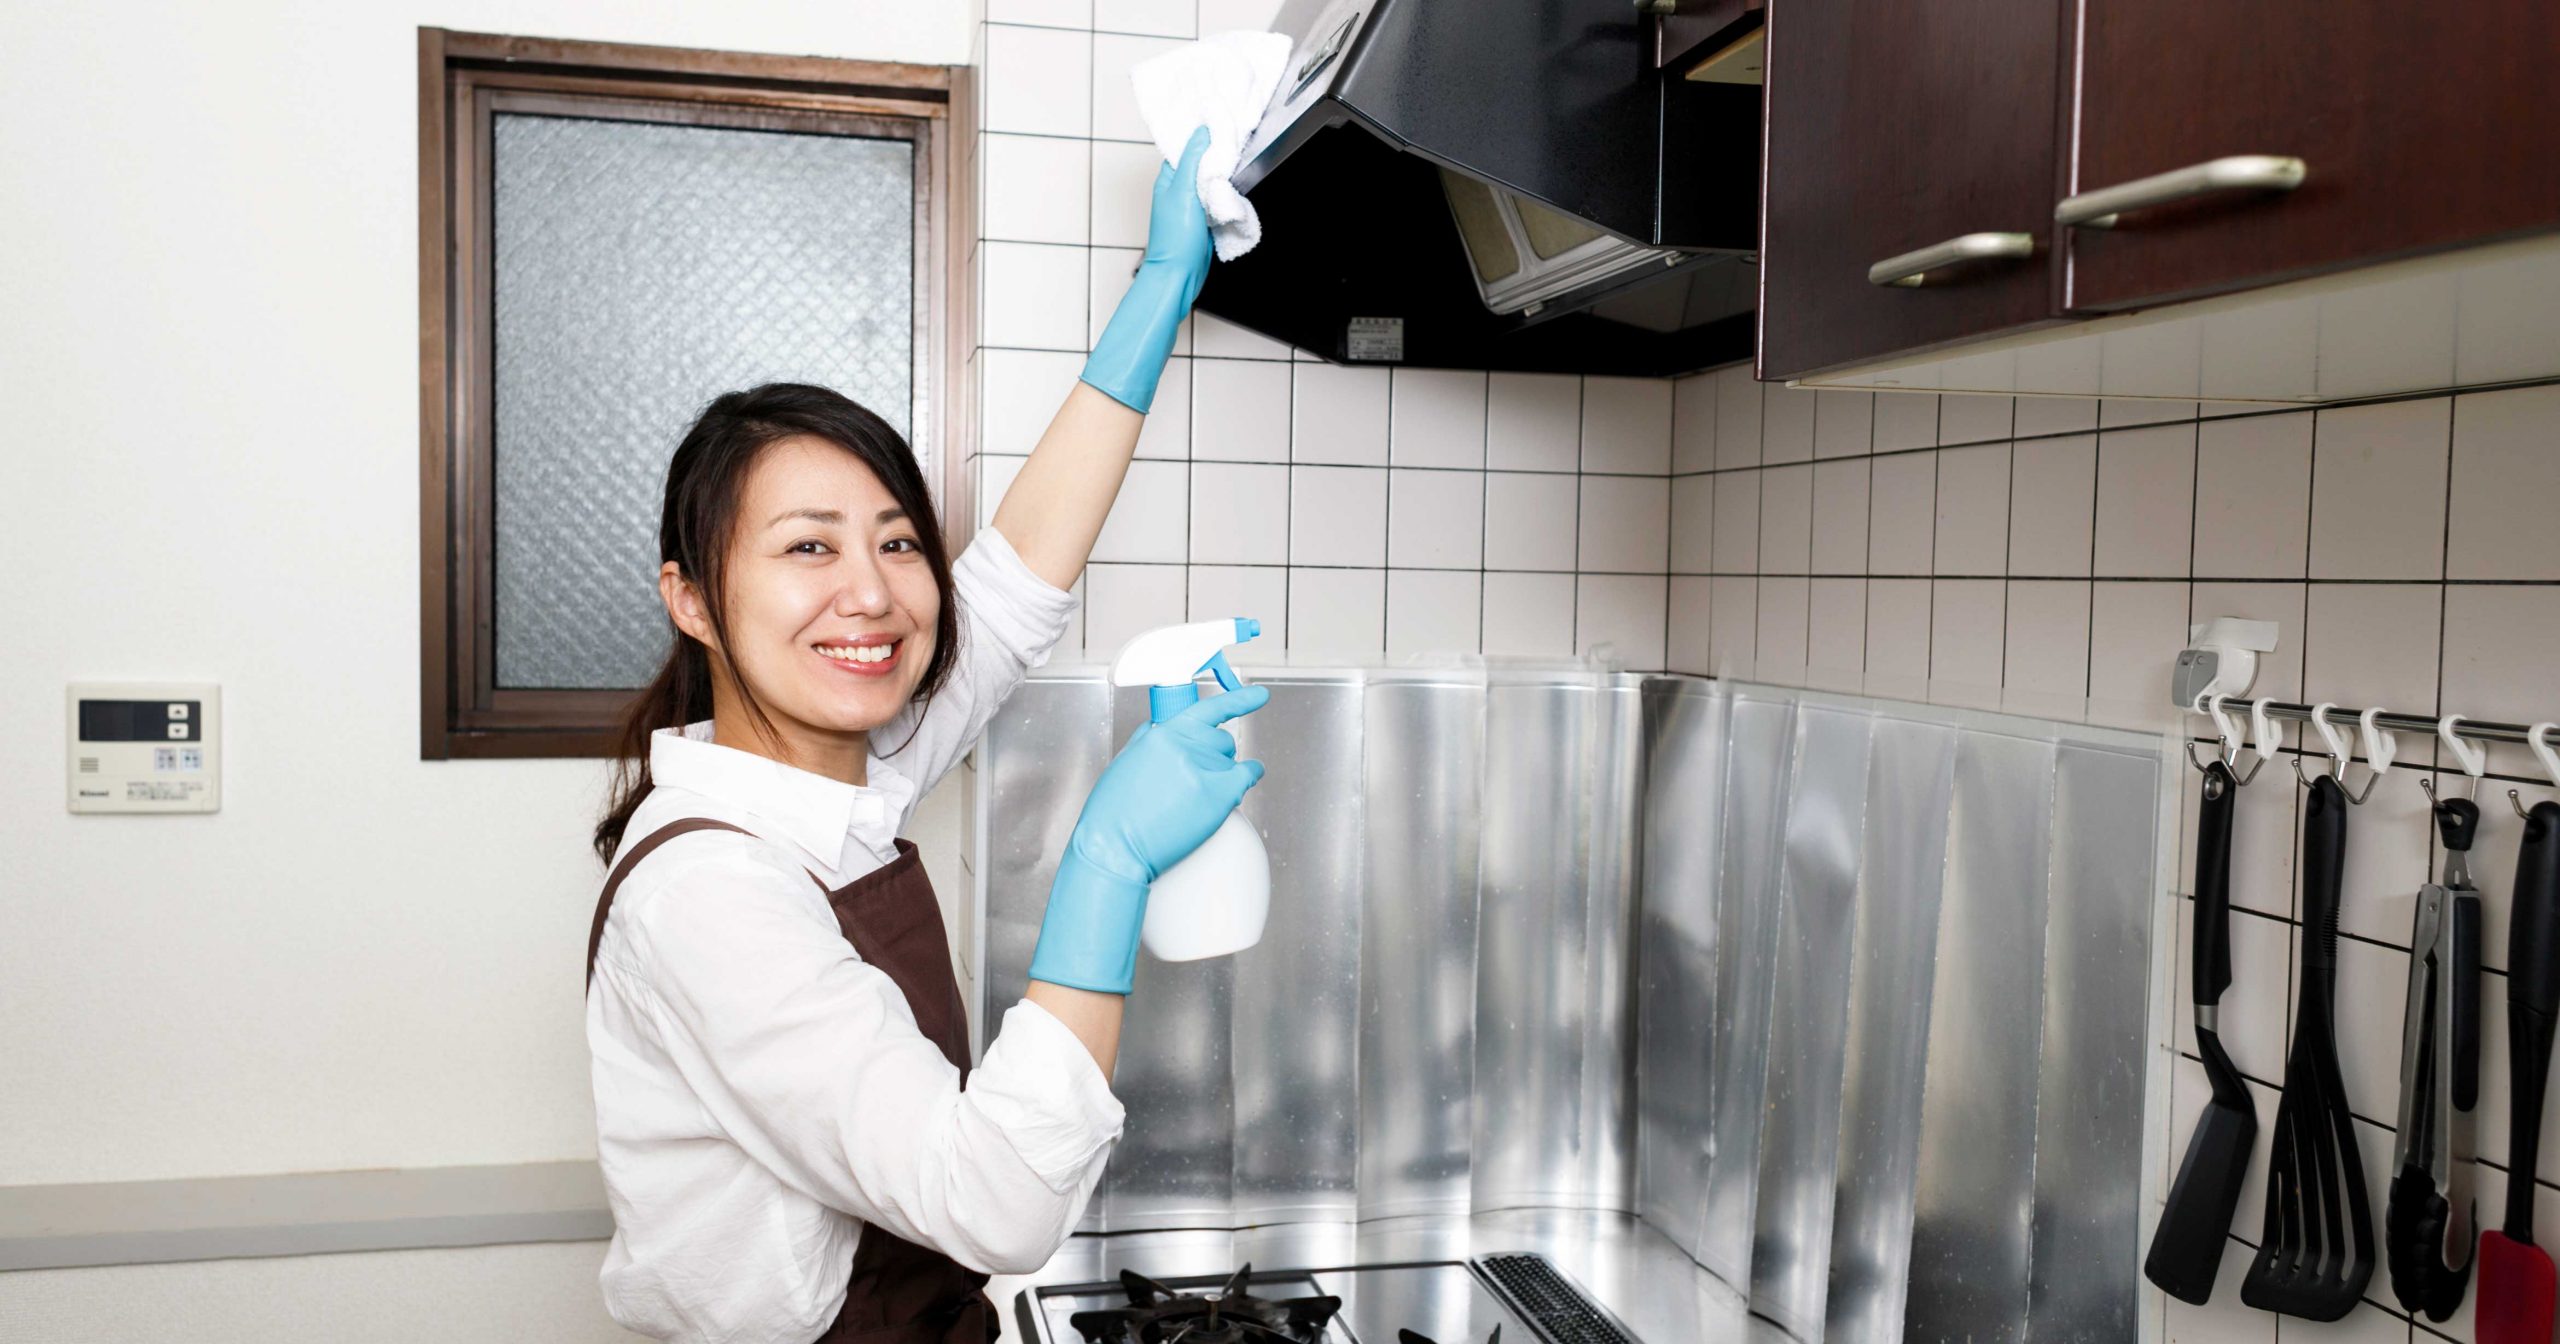 キッチンの換気扇を掃除する女性の写真